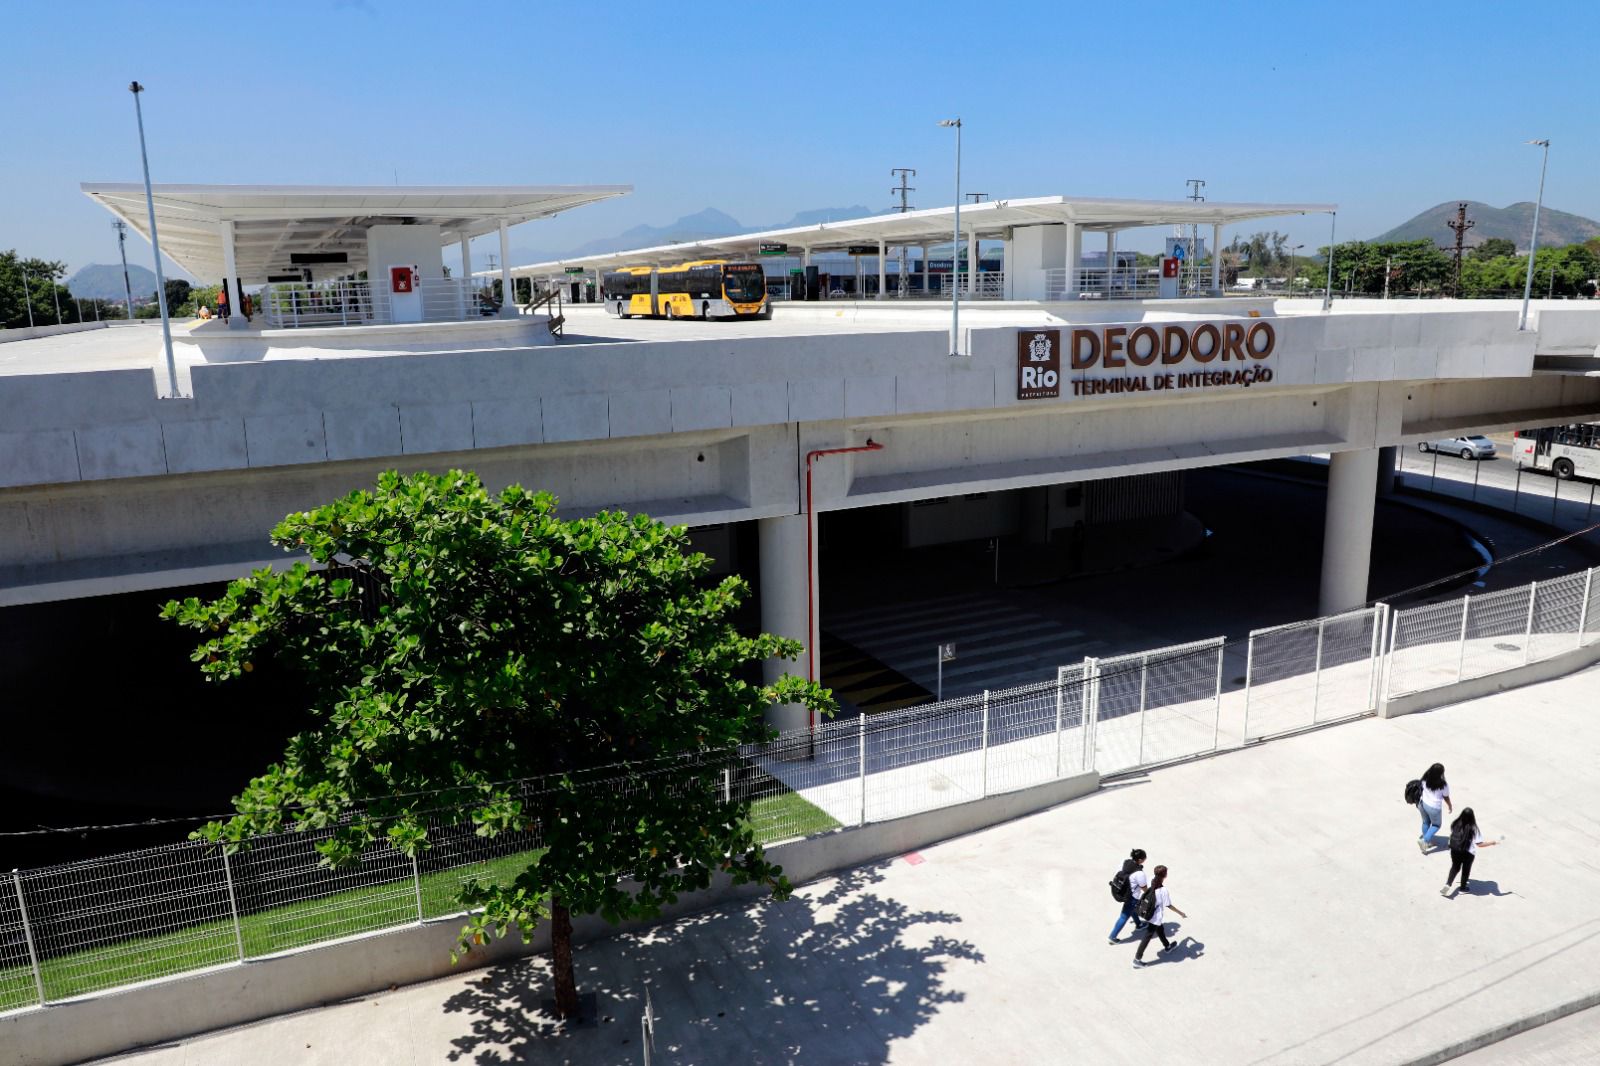 Prefeitura inaugura o Terminal Deodoro - Prefeitura da Cidade do